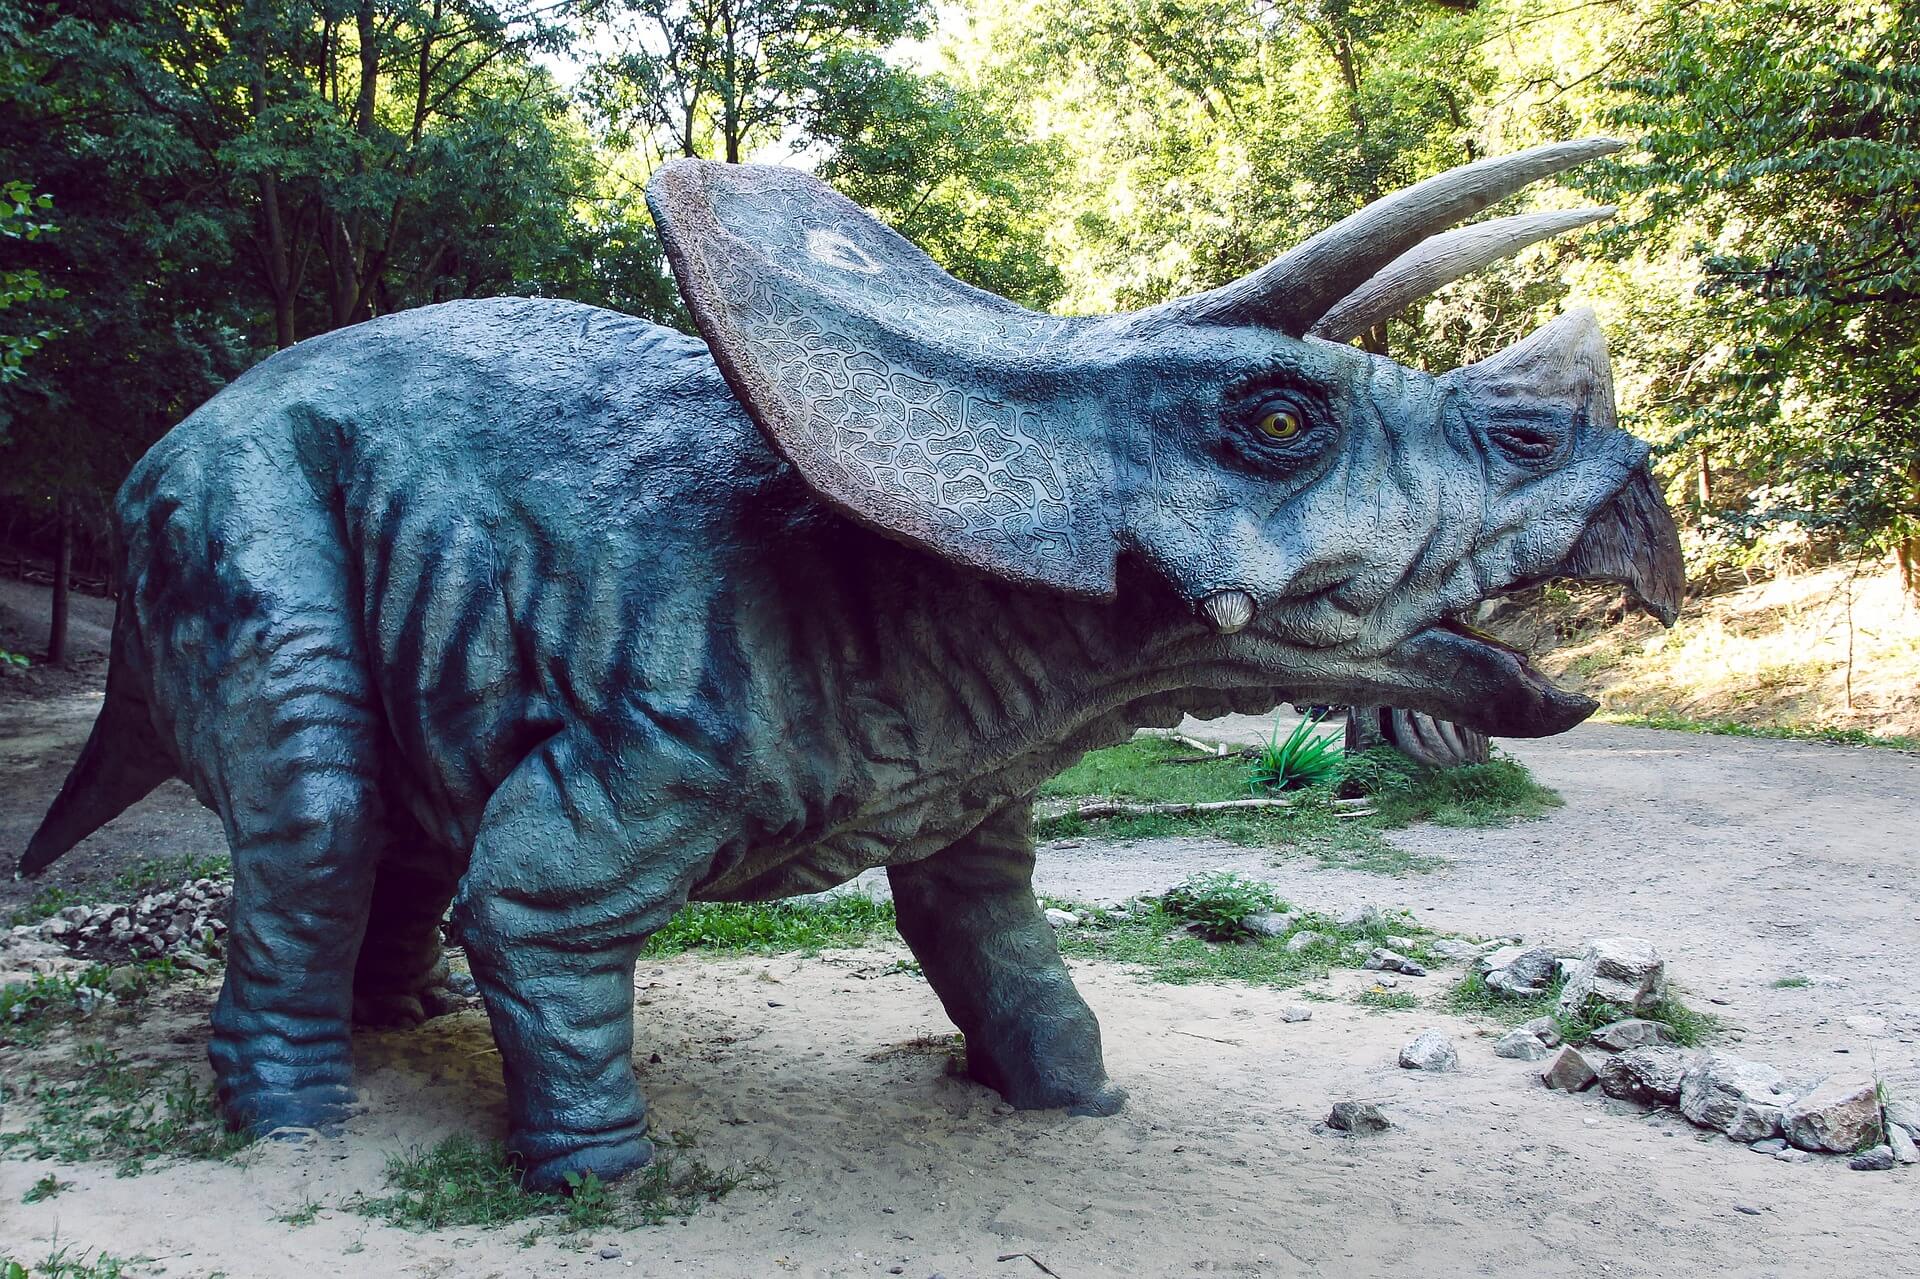 El triceratops, uno de los dinosaurios más famosos, en su hábitat.